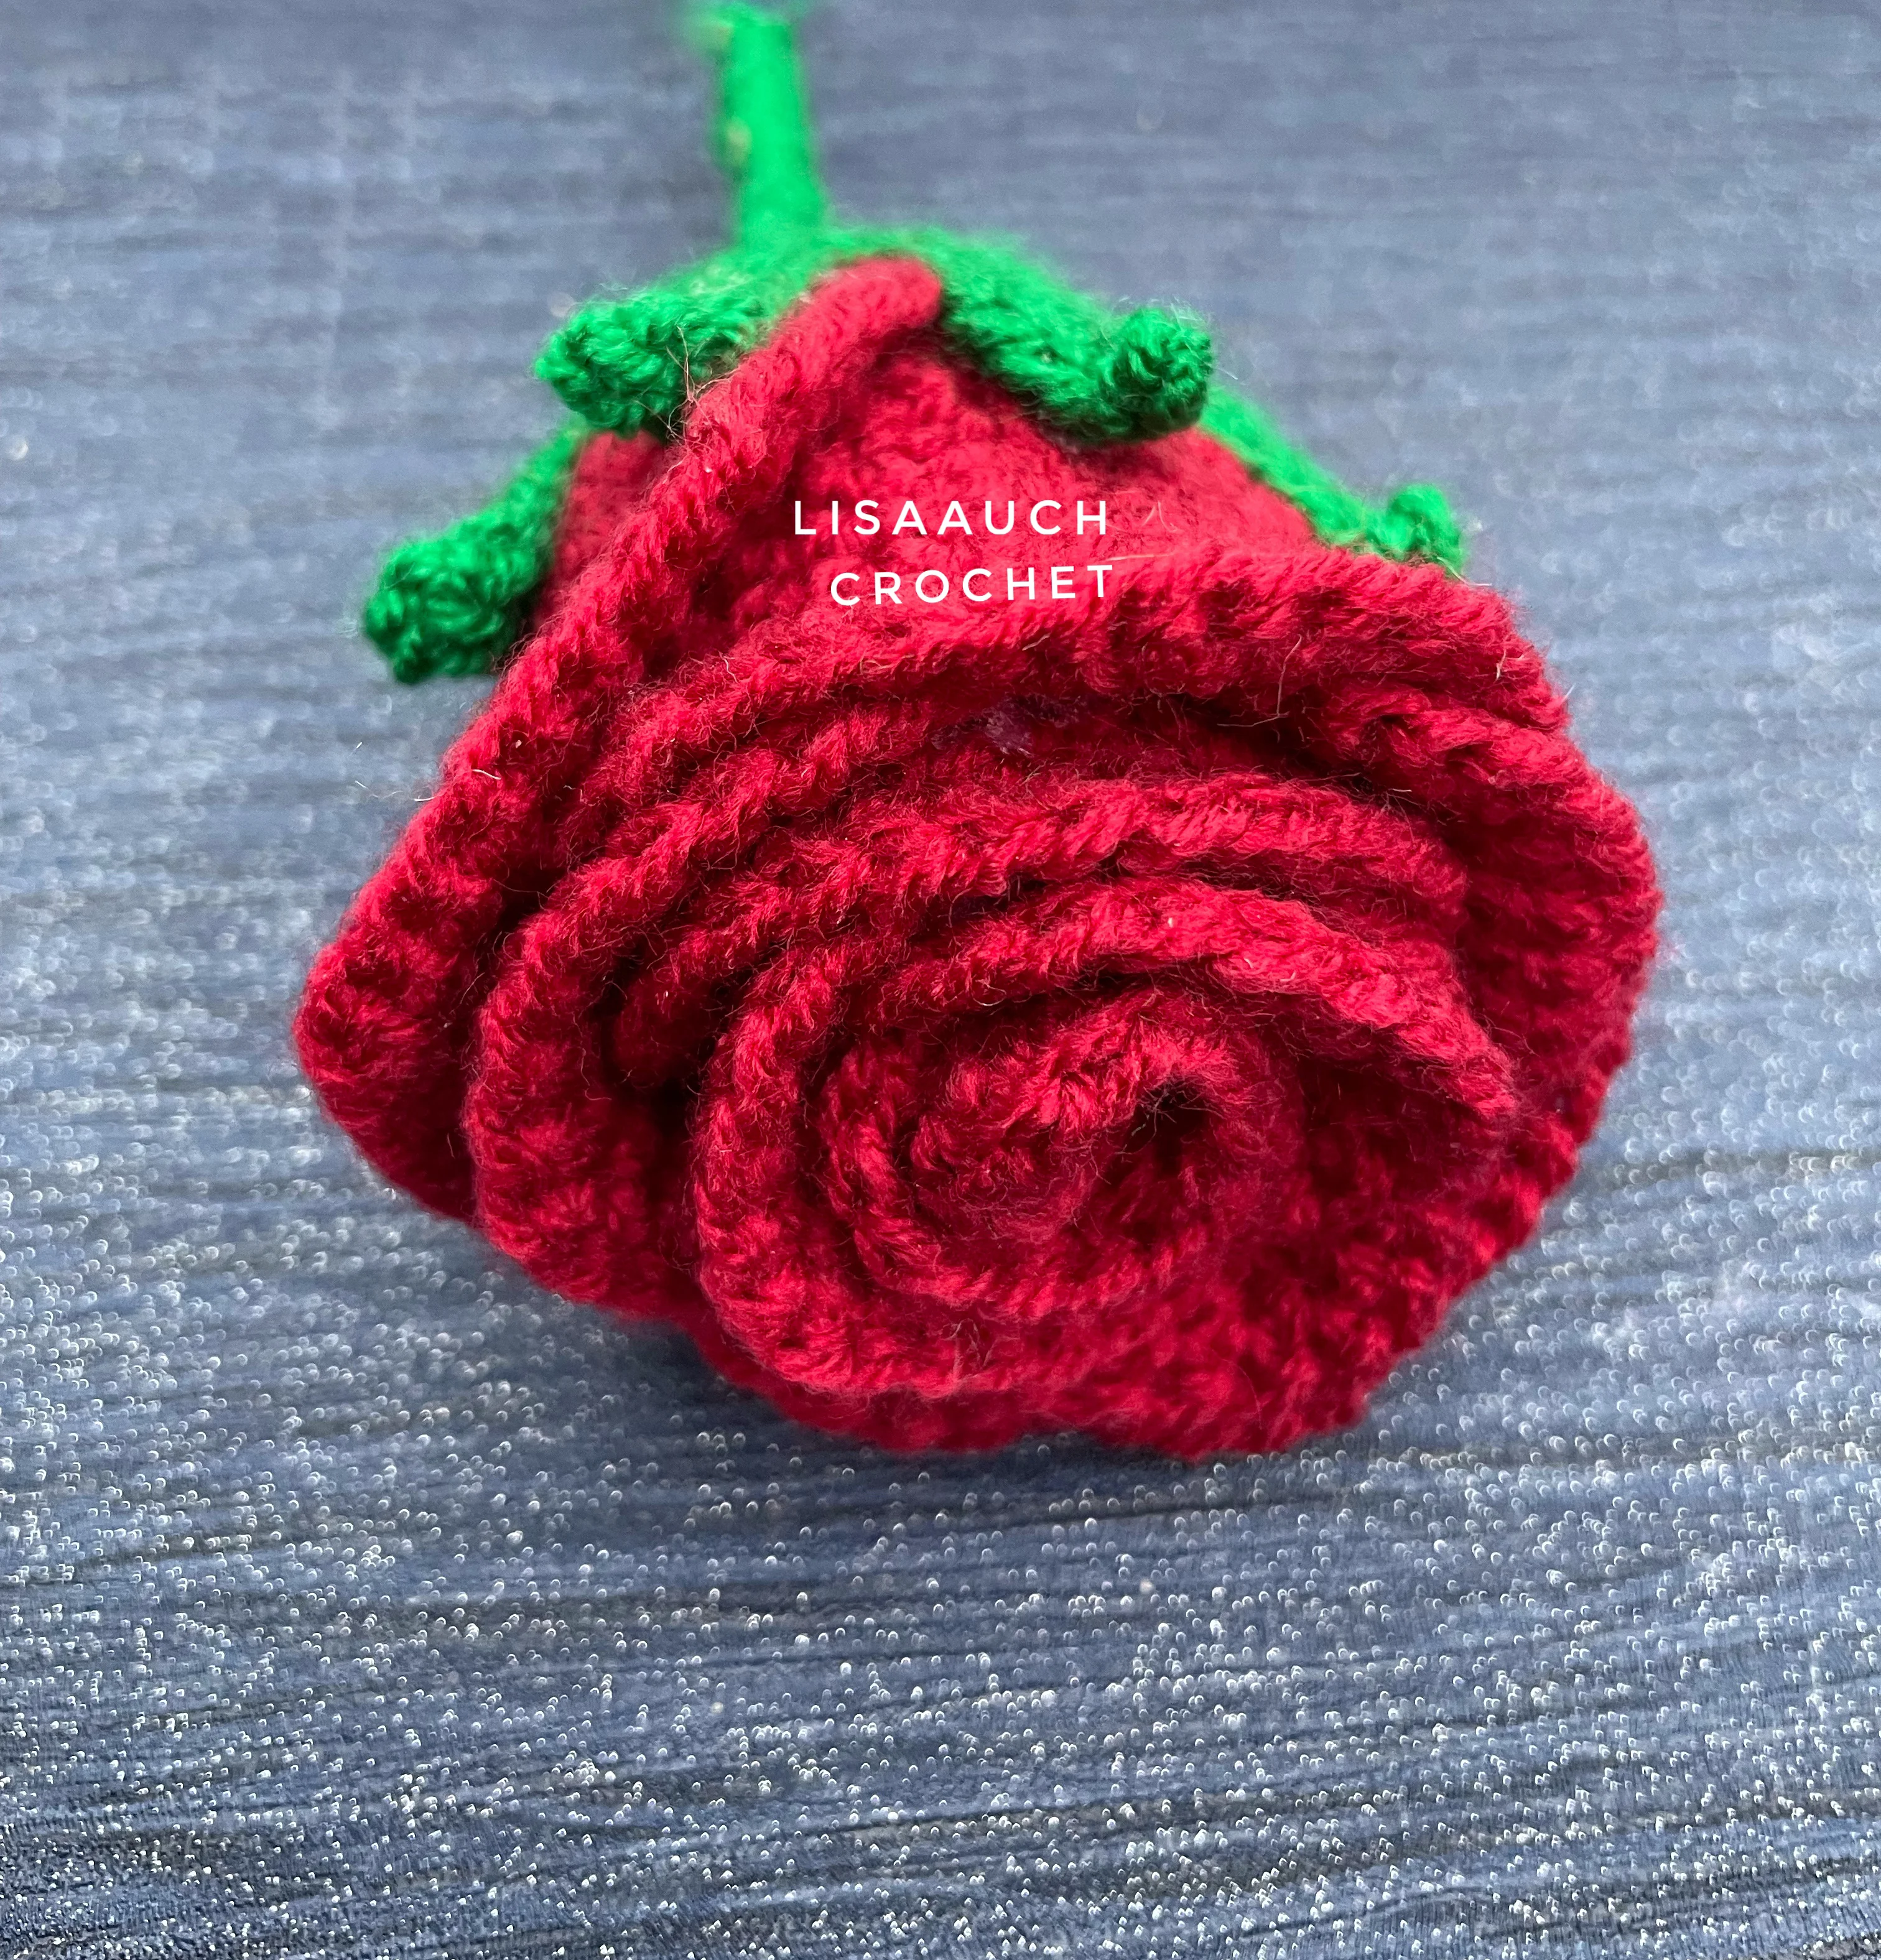 crochet rose with long stem